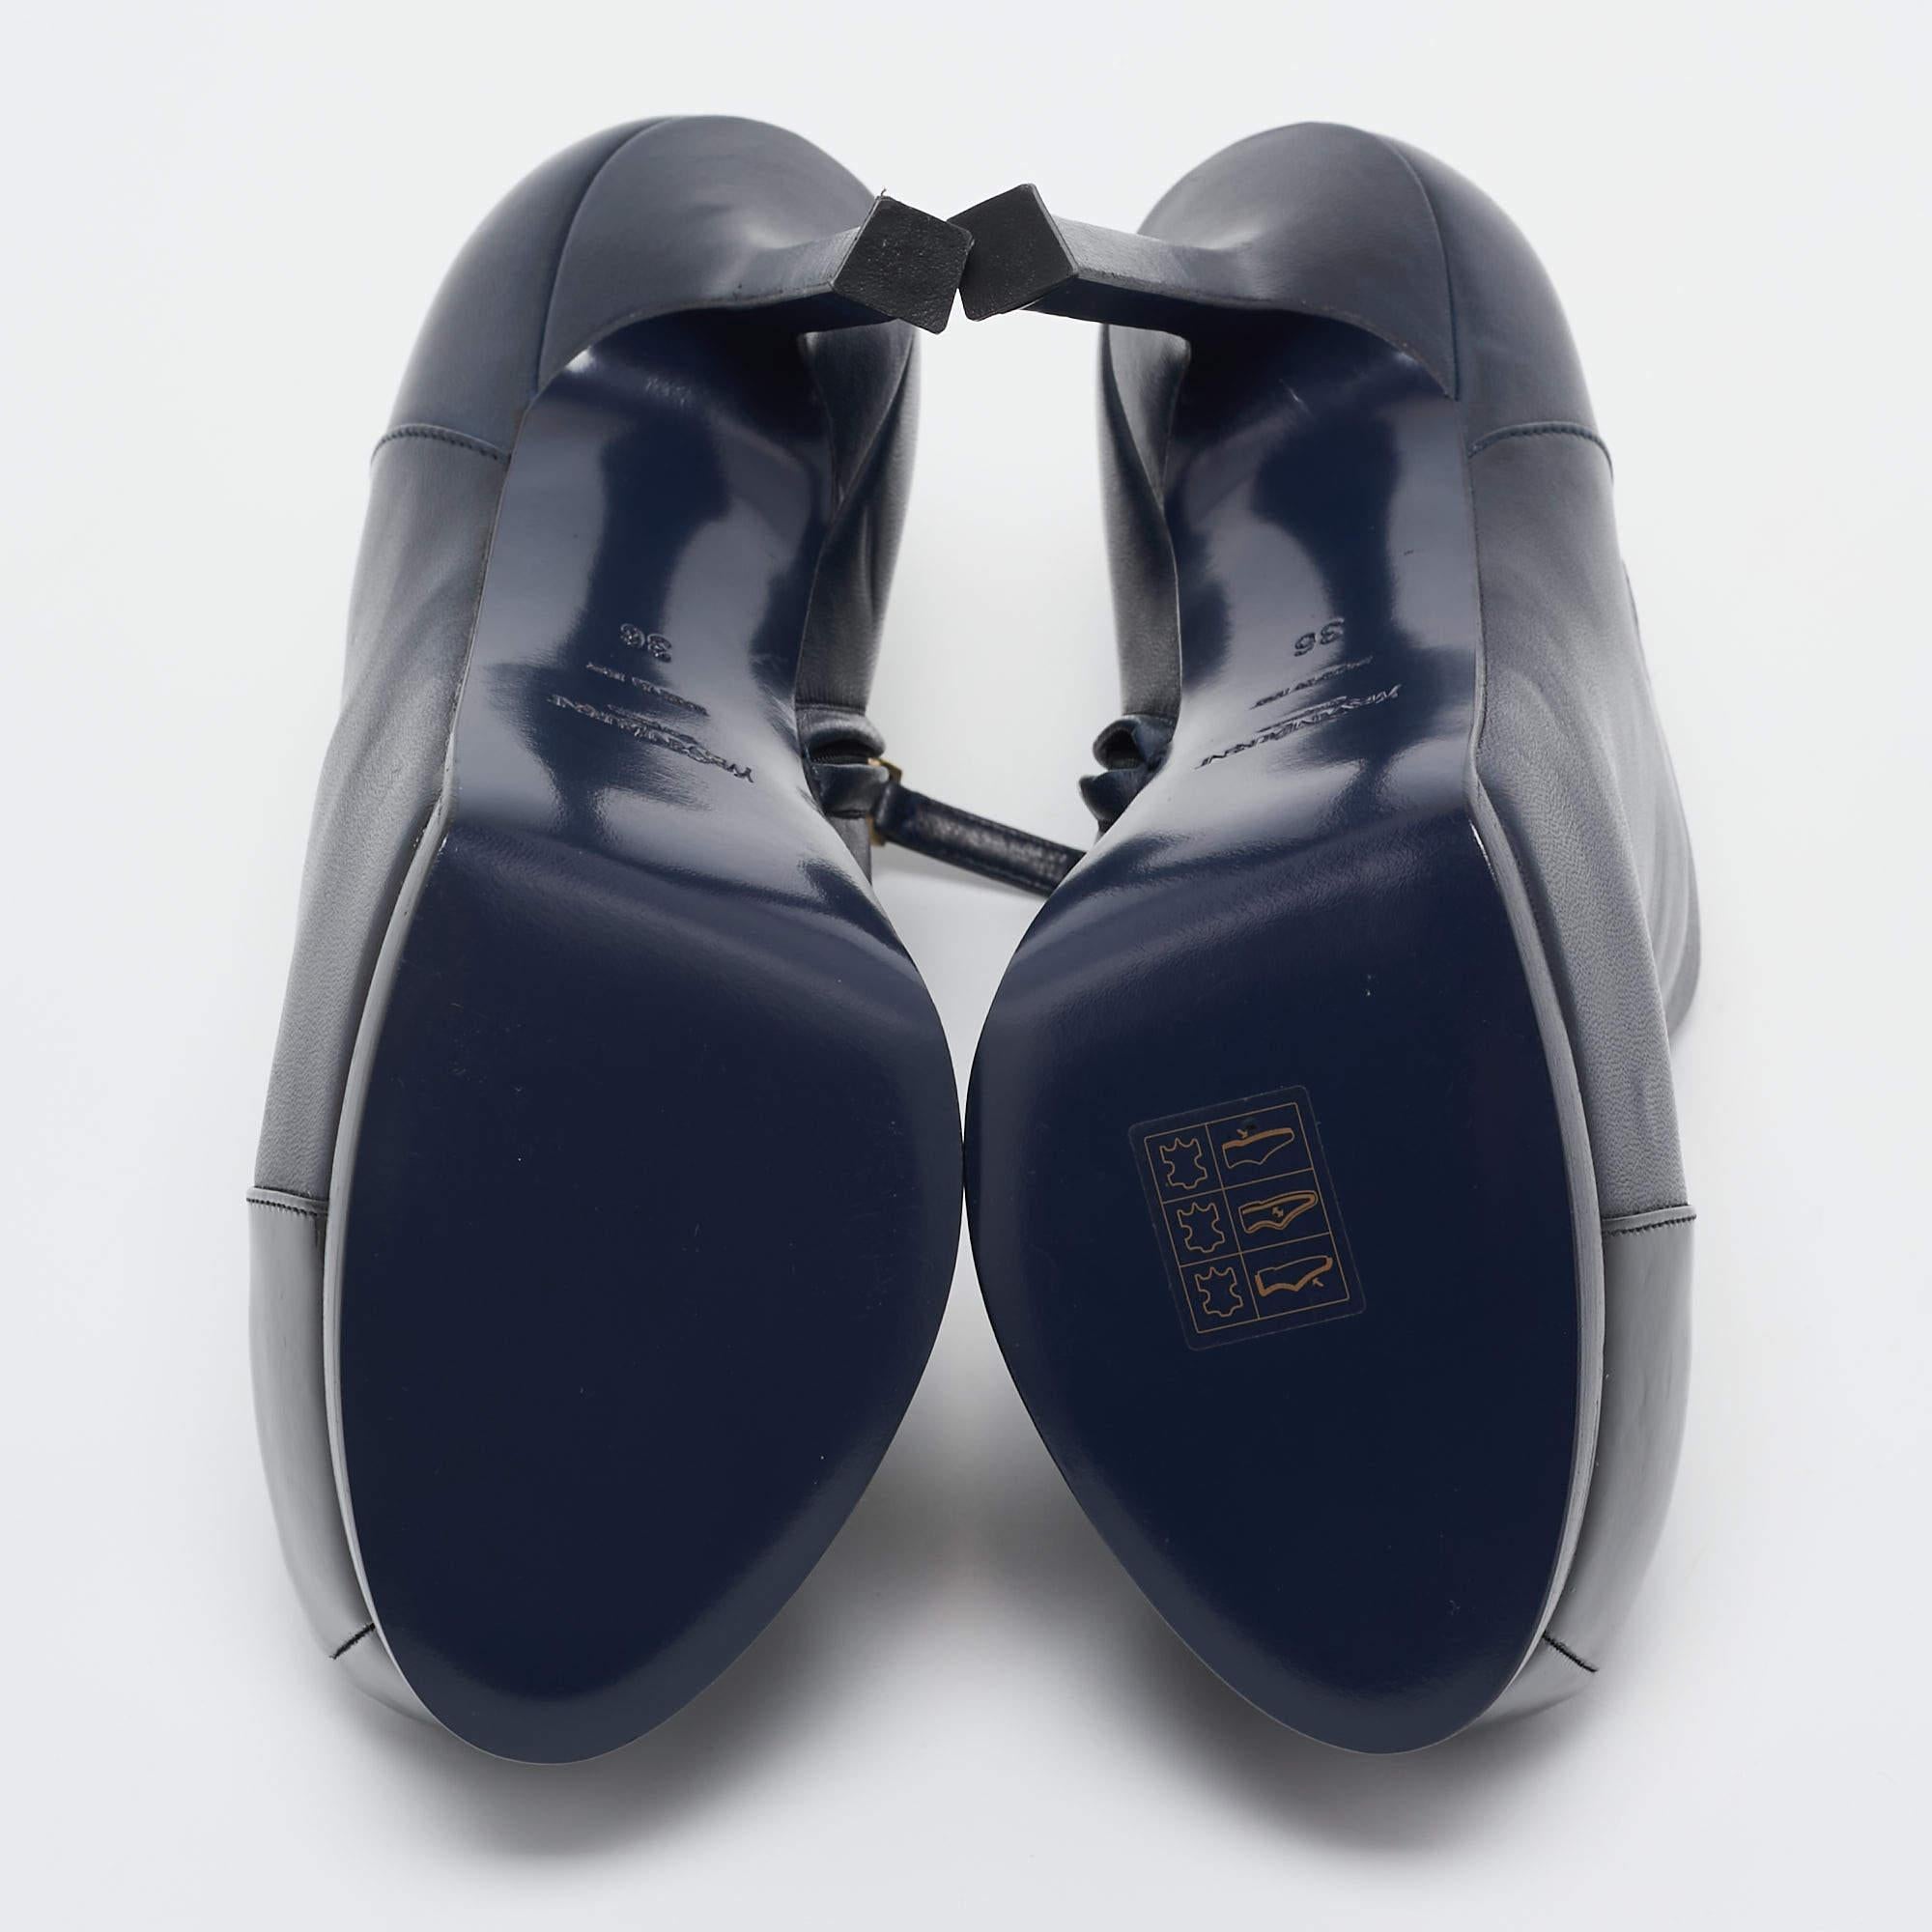 Diese YSL-Stiefel wurden sorgfältig in einer eleganten Silhouette entworfen und sind ein echter Hingucker. Sie verfügen über bequeme Einlegesohlen und strapazierfähige Laufsohlen für eine lange Lebensdauer. Diese Stiefel sind einfach umwerfend, und